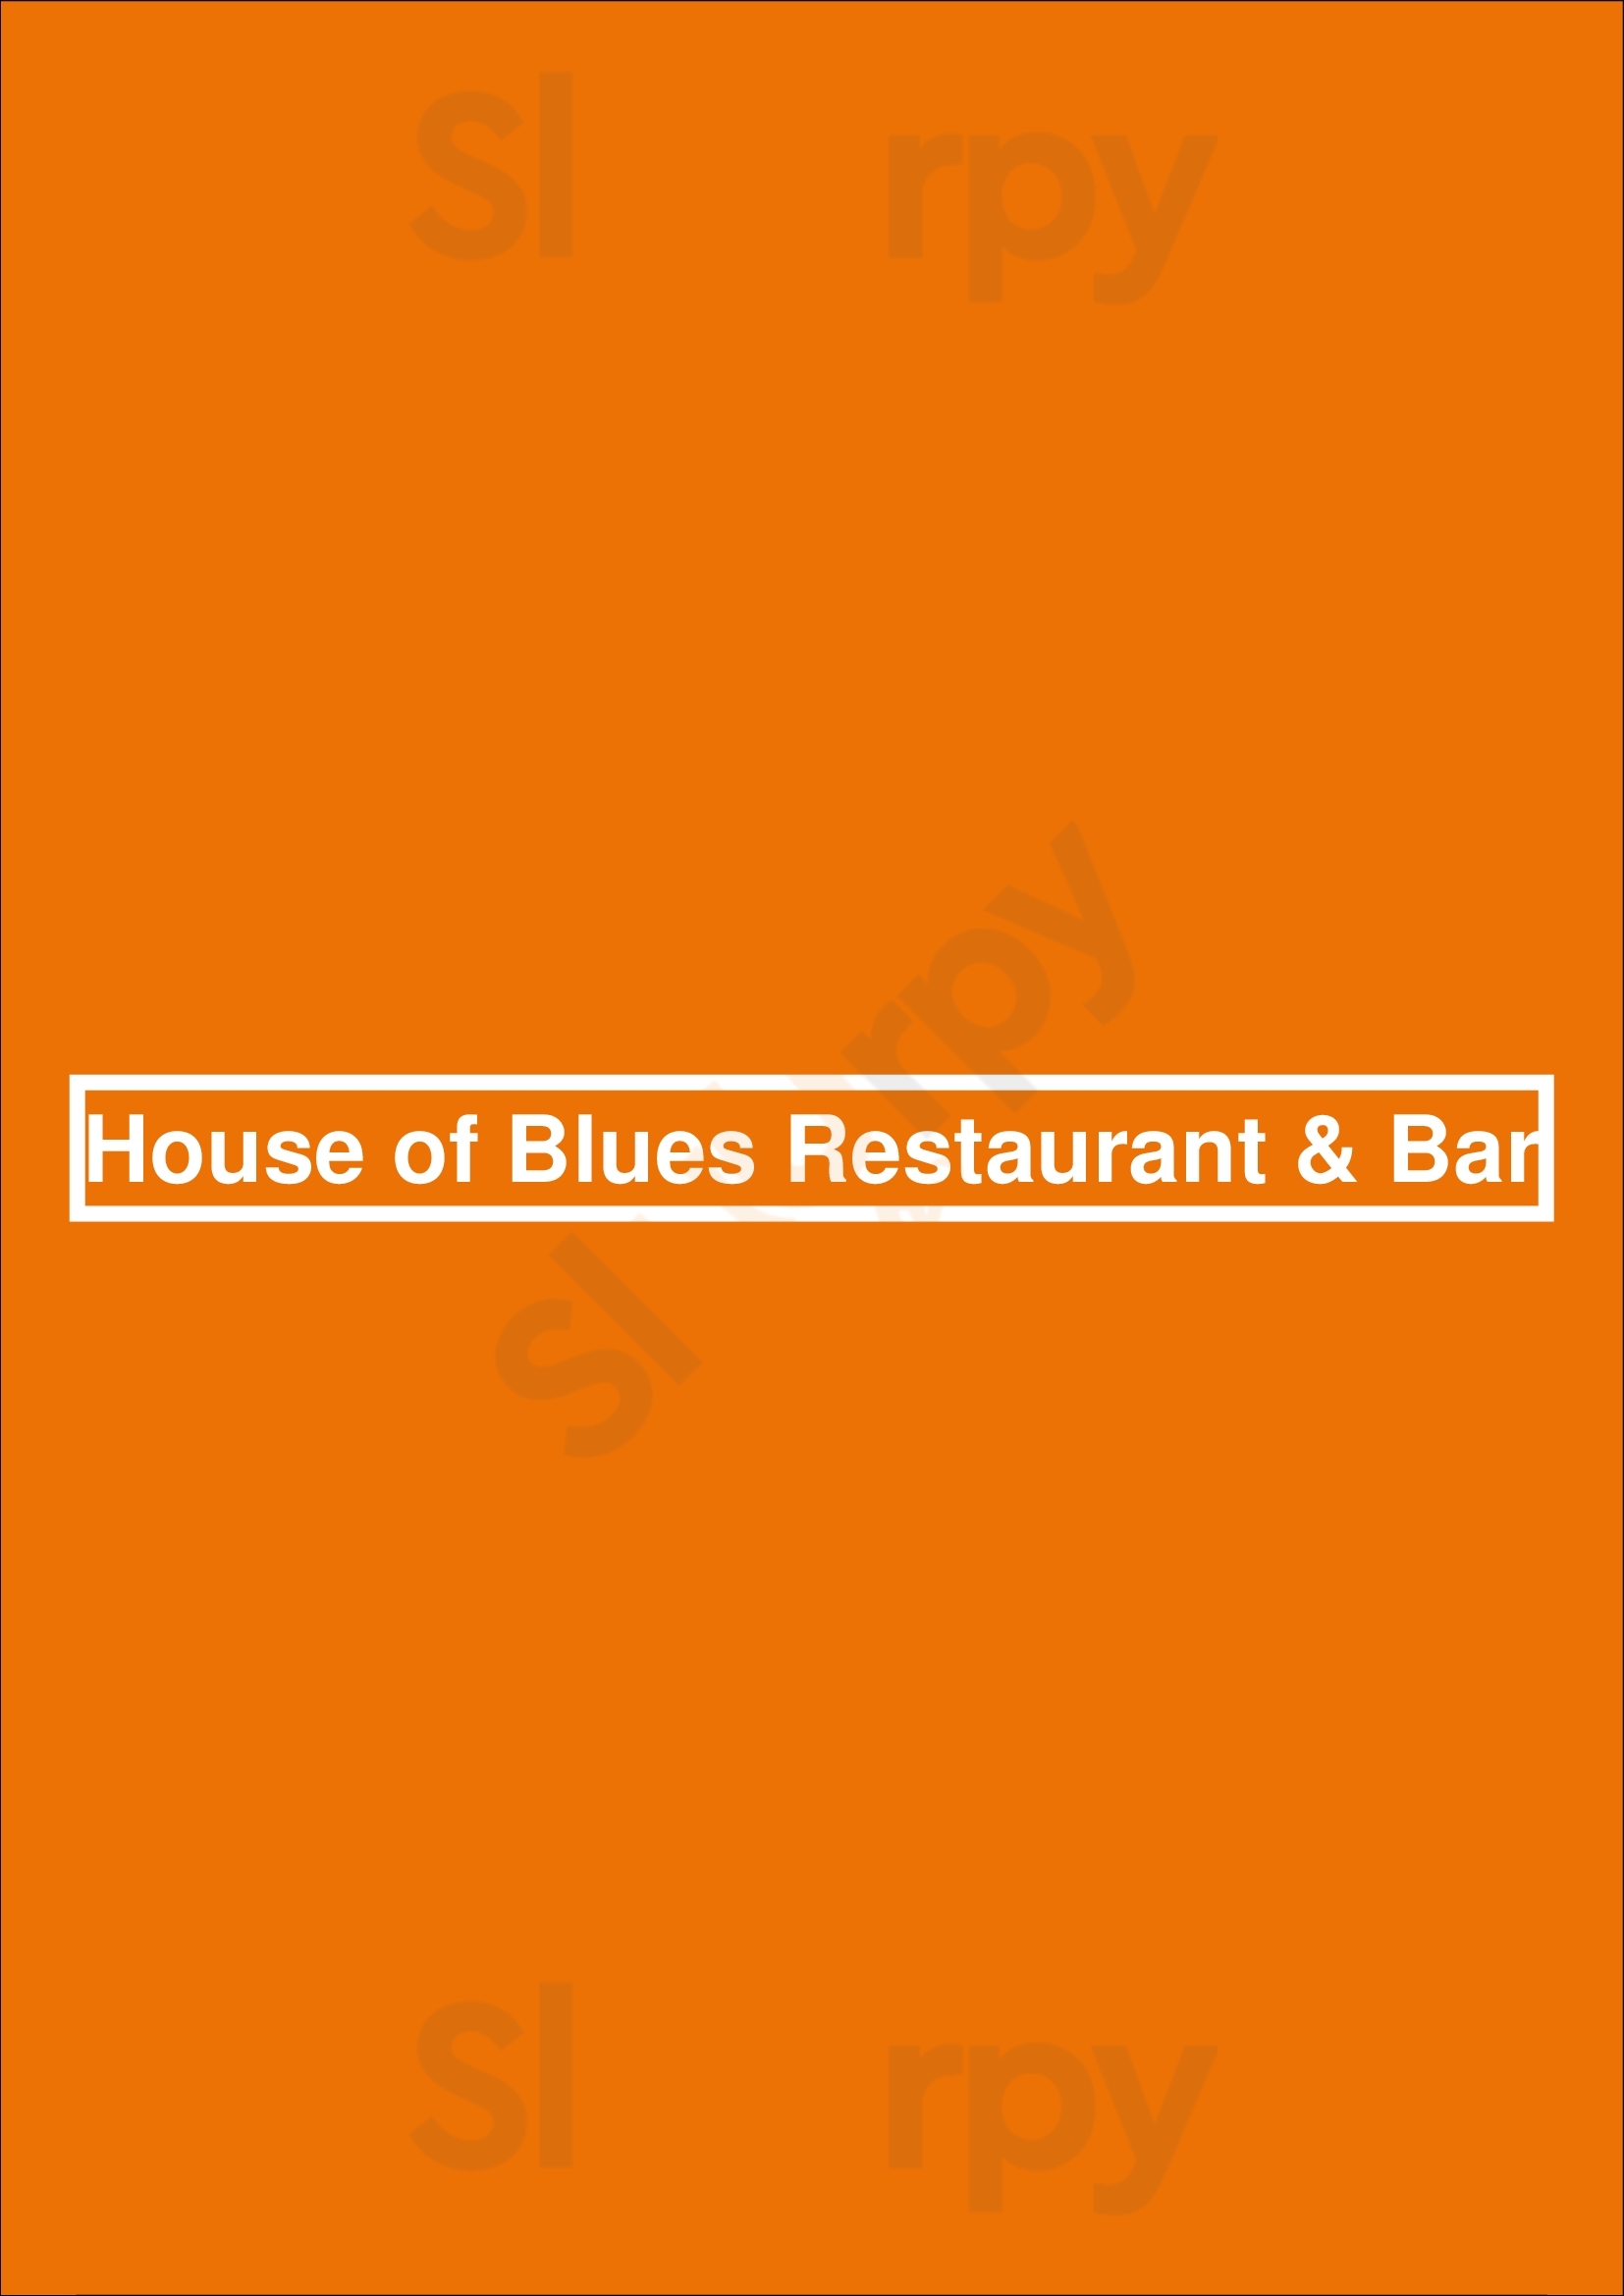 House Of Blues Restaurant & Bar Orlando Menu - 1